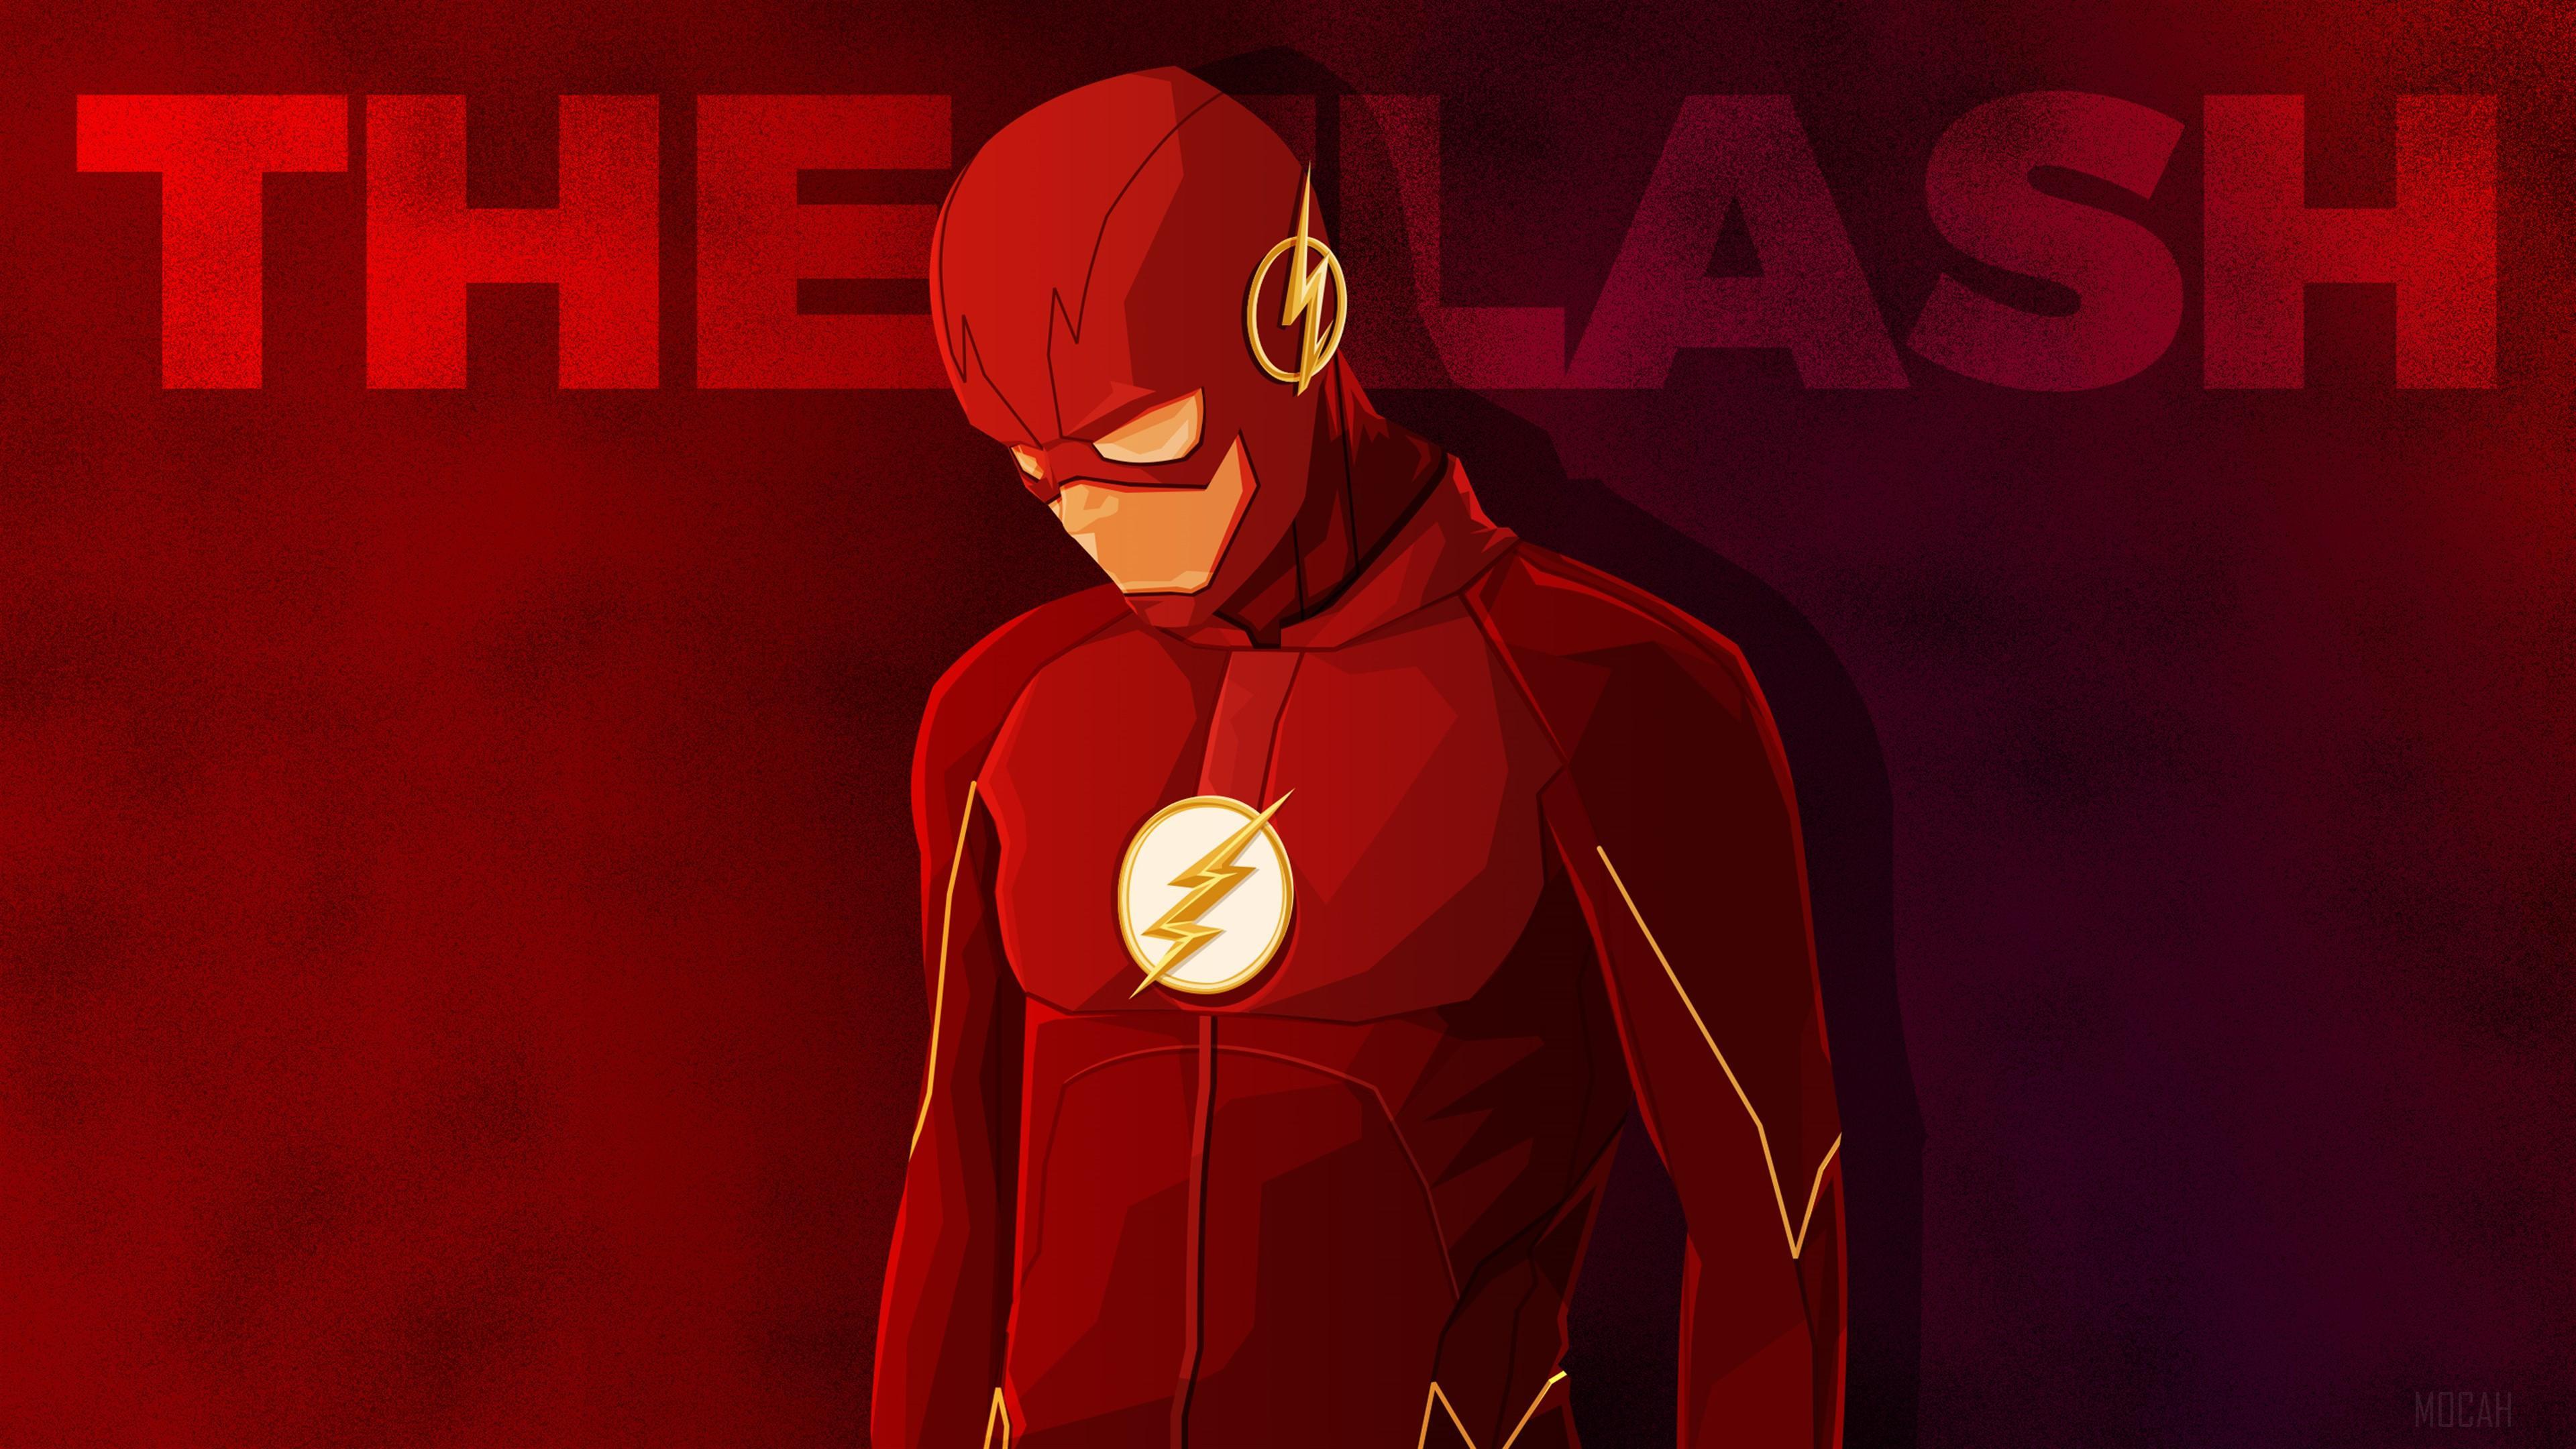 HD wallpaper, Barry Allen The Flash Hd 4K